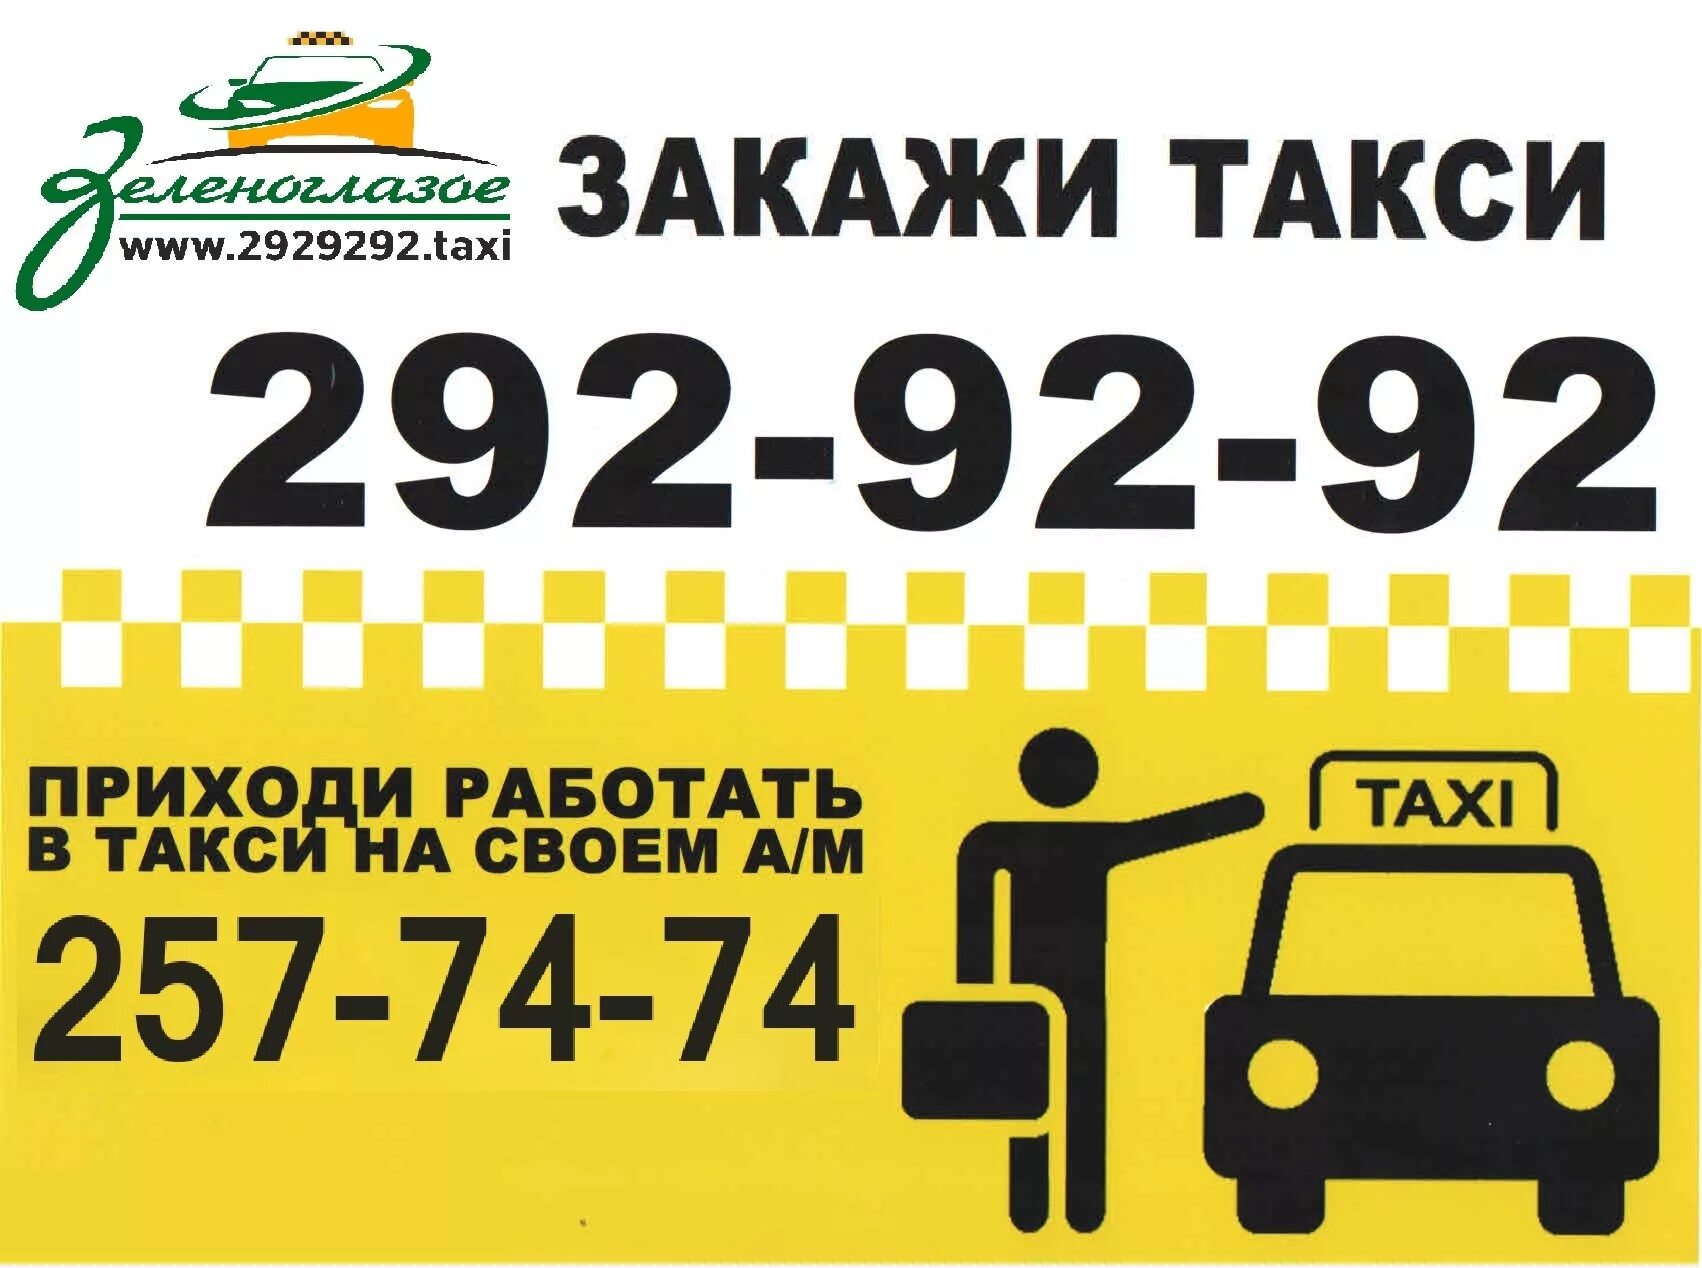 Заказать такси бесплатный номер. Закажи такси. Самое дешевое такси номер. Такси Уфа. Номер недорогого такси.